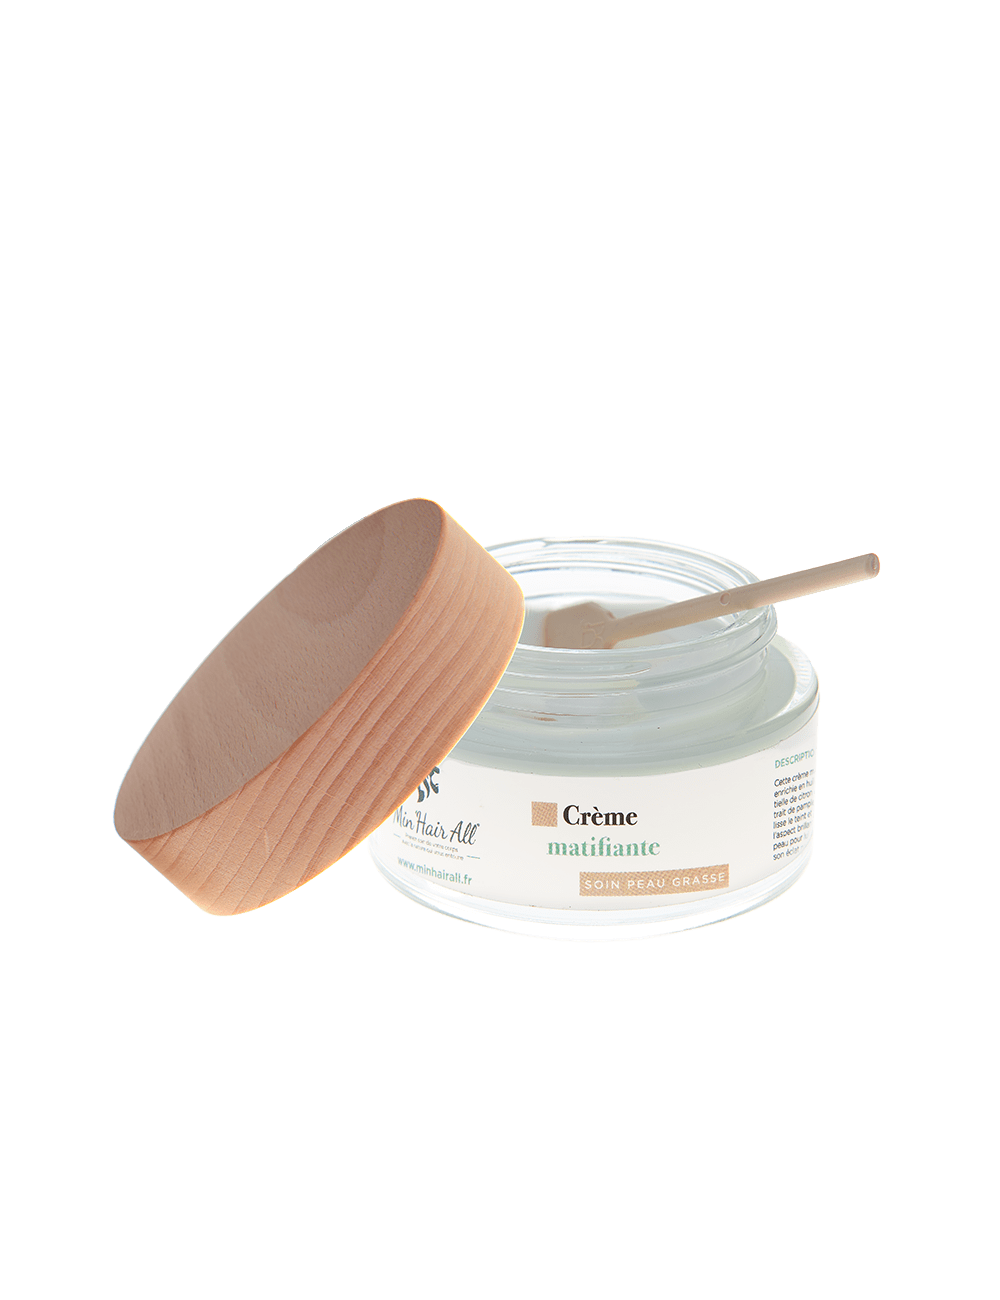 Crème matifiante pour traitement des peaux grasses.  Min'Hair All. Pot en verre 50ml, texture crémeuse avec sa spatule fournie.